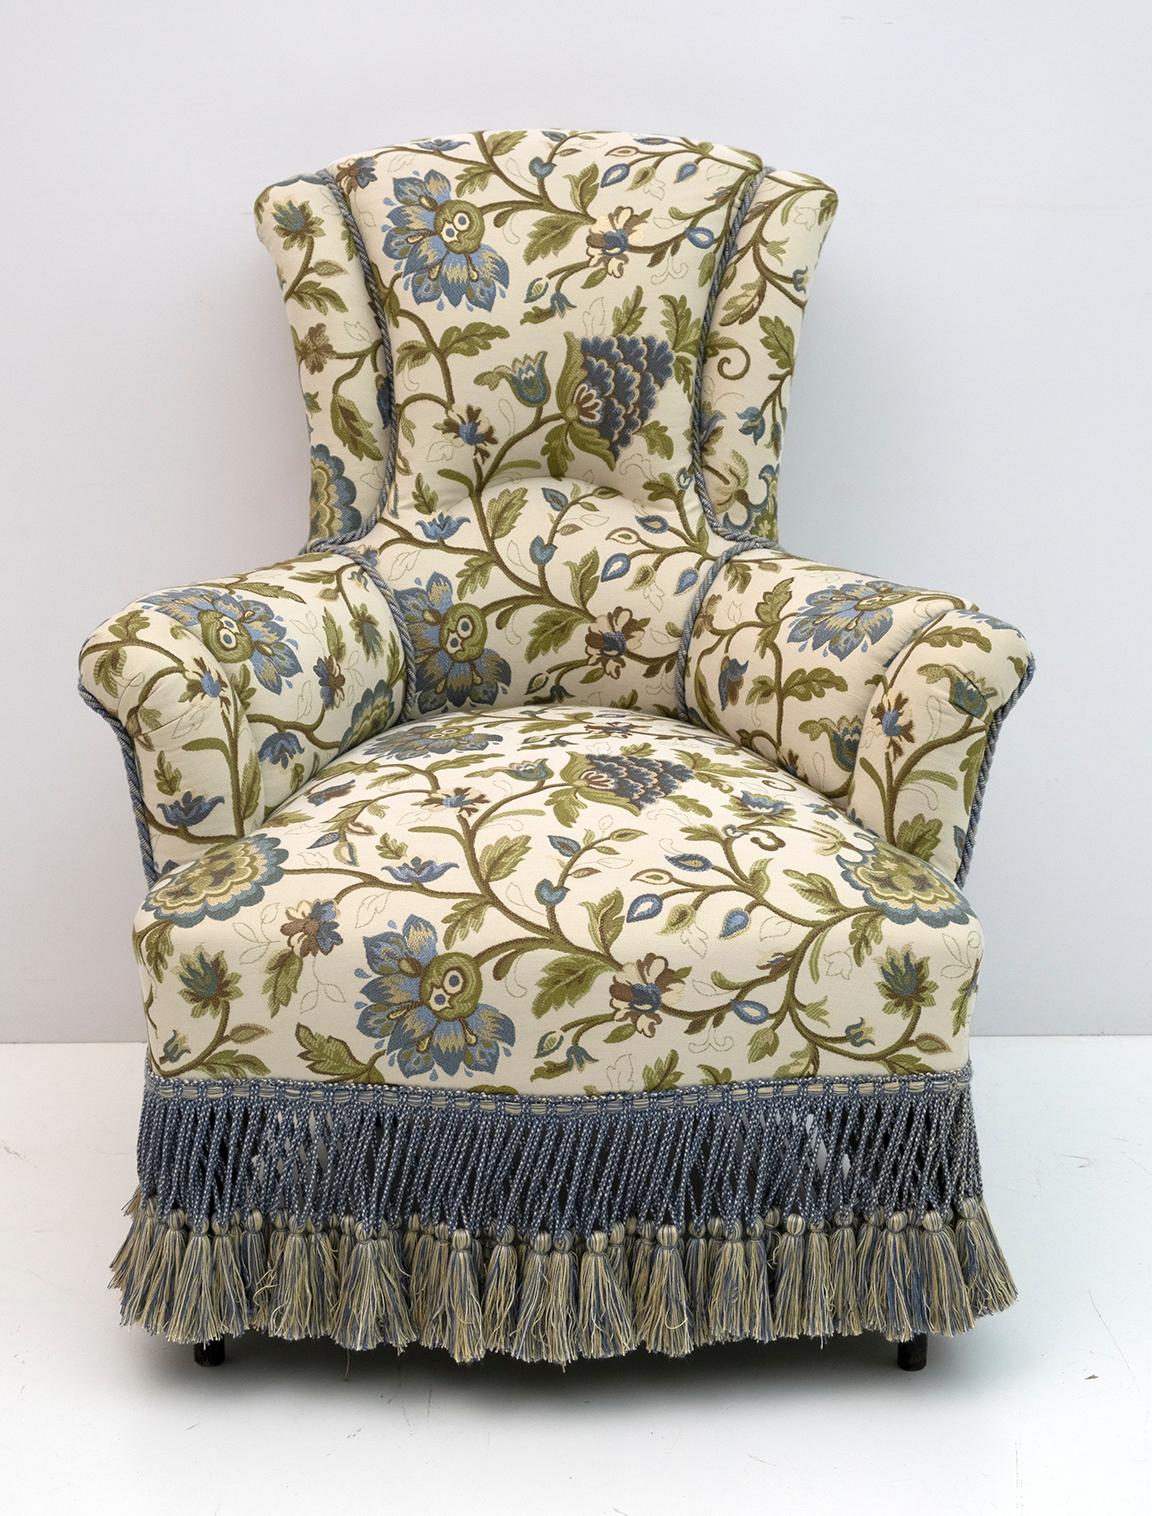 Paire de fauteuils du XIXe siècle, période Napoléon III. Les fauteuils ont été restaurés et la tapisserie a été remplacée par un magnifique brocart italien. France, 1870.

Le prix se réfère à un seul fauteuil.